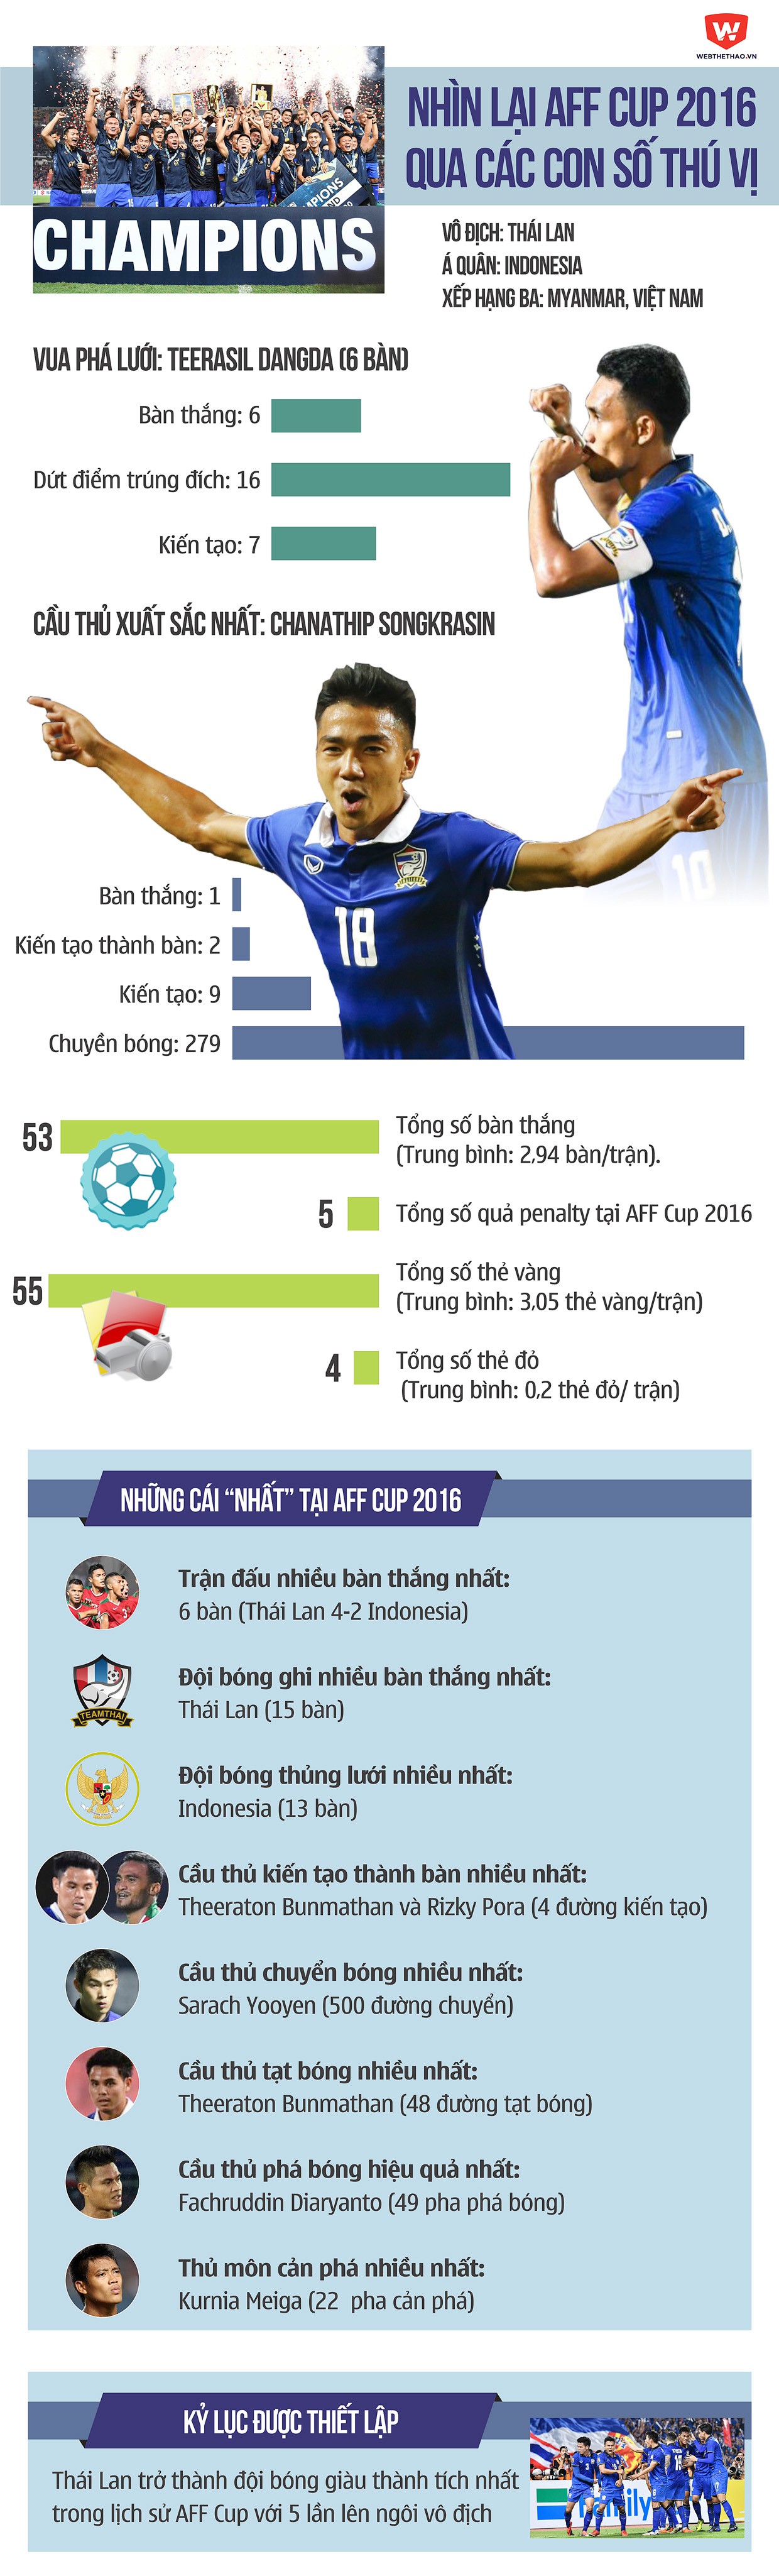 Nhìn lại AFF Cup 2016 qua các con số. Đồ họa: Tiến Hùng 